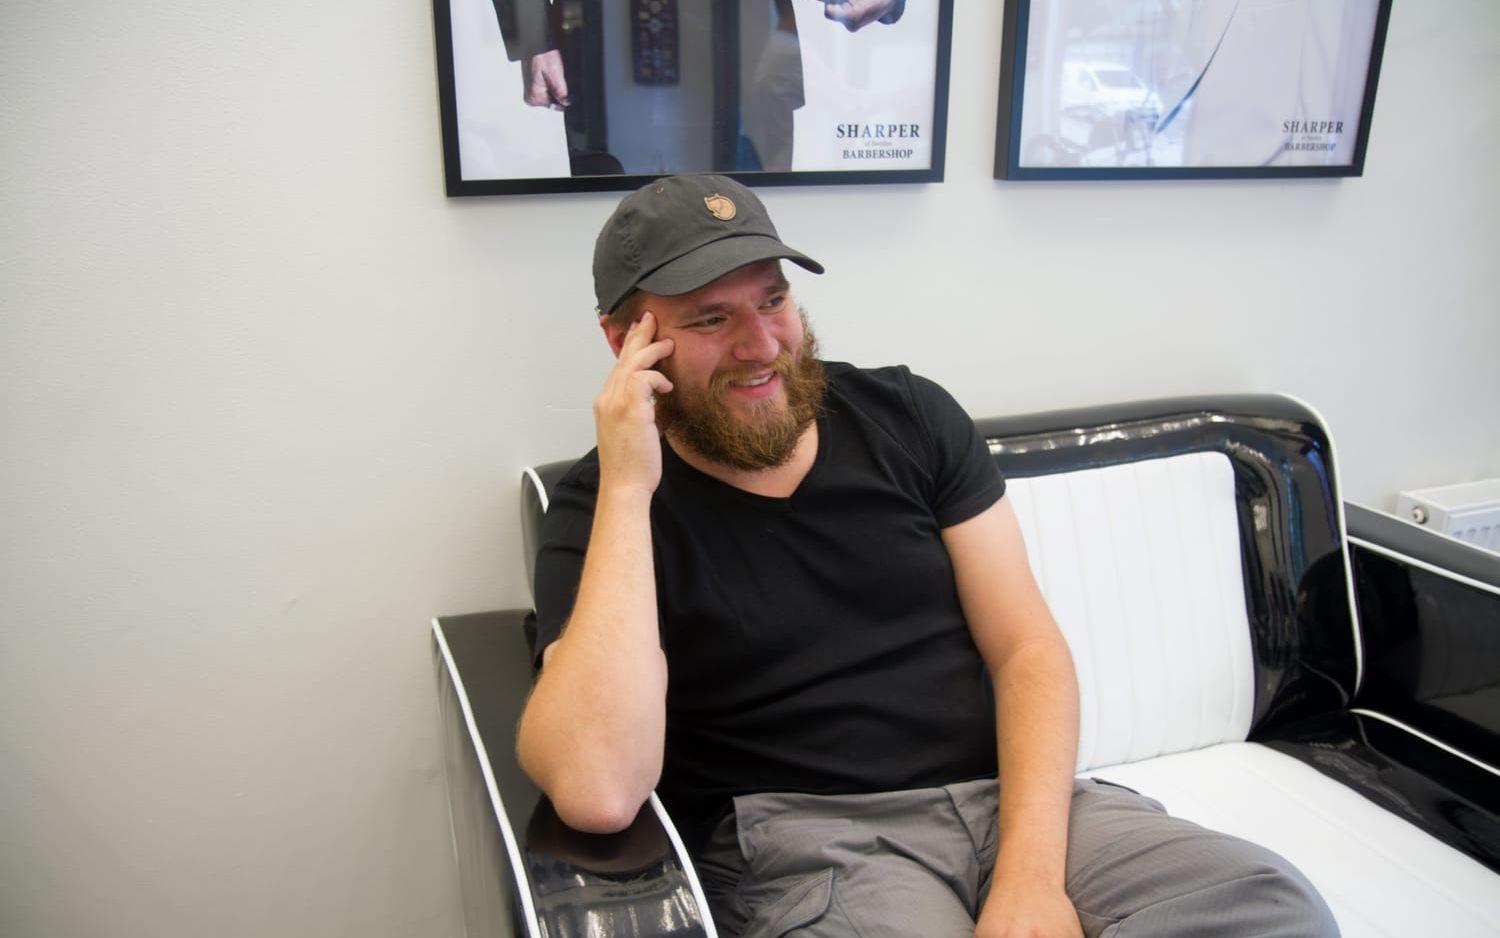 Petter Karlsson gillar sitt skägg och går till barberaren regelbundet. "Jag kommer att behålla skägget så länge det går. Skägg är snyggt och respektingivande", säger han. Bild: Eva Alverbratt